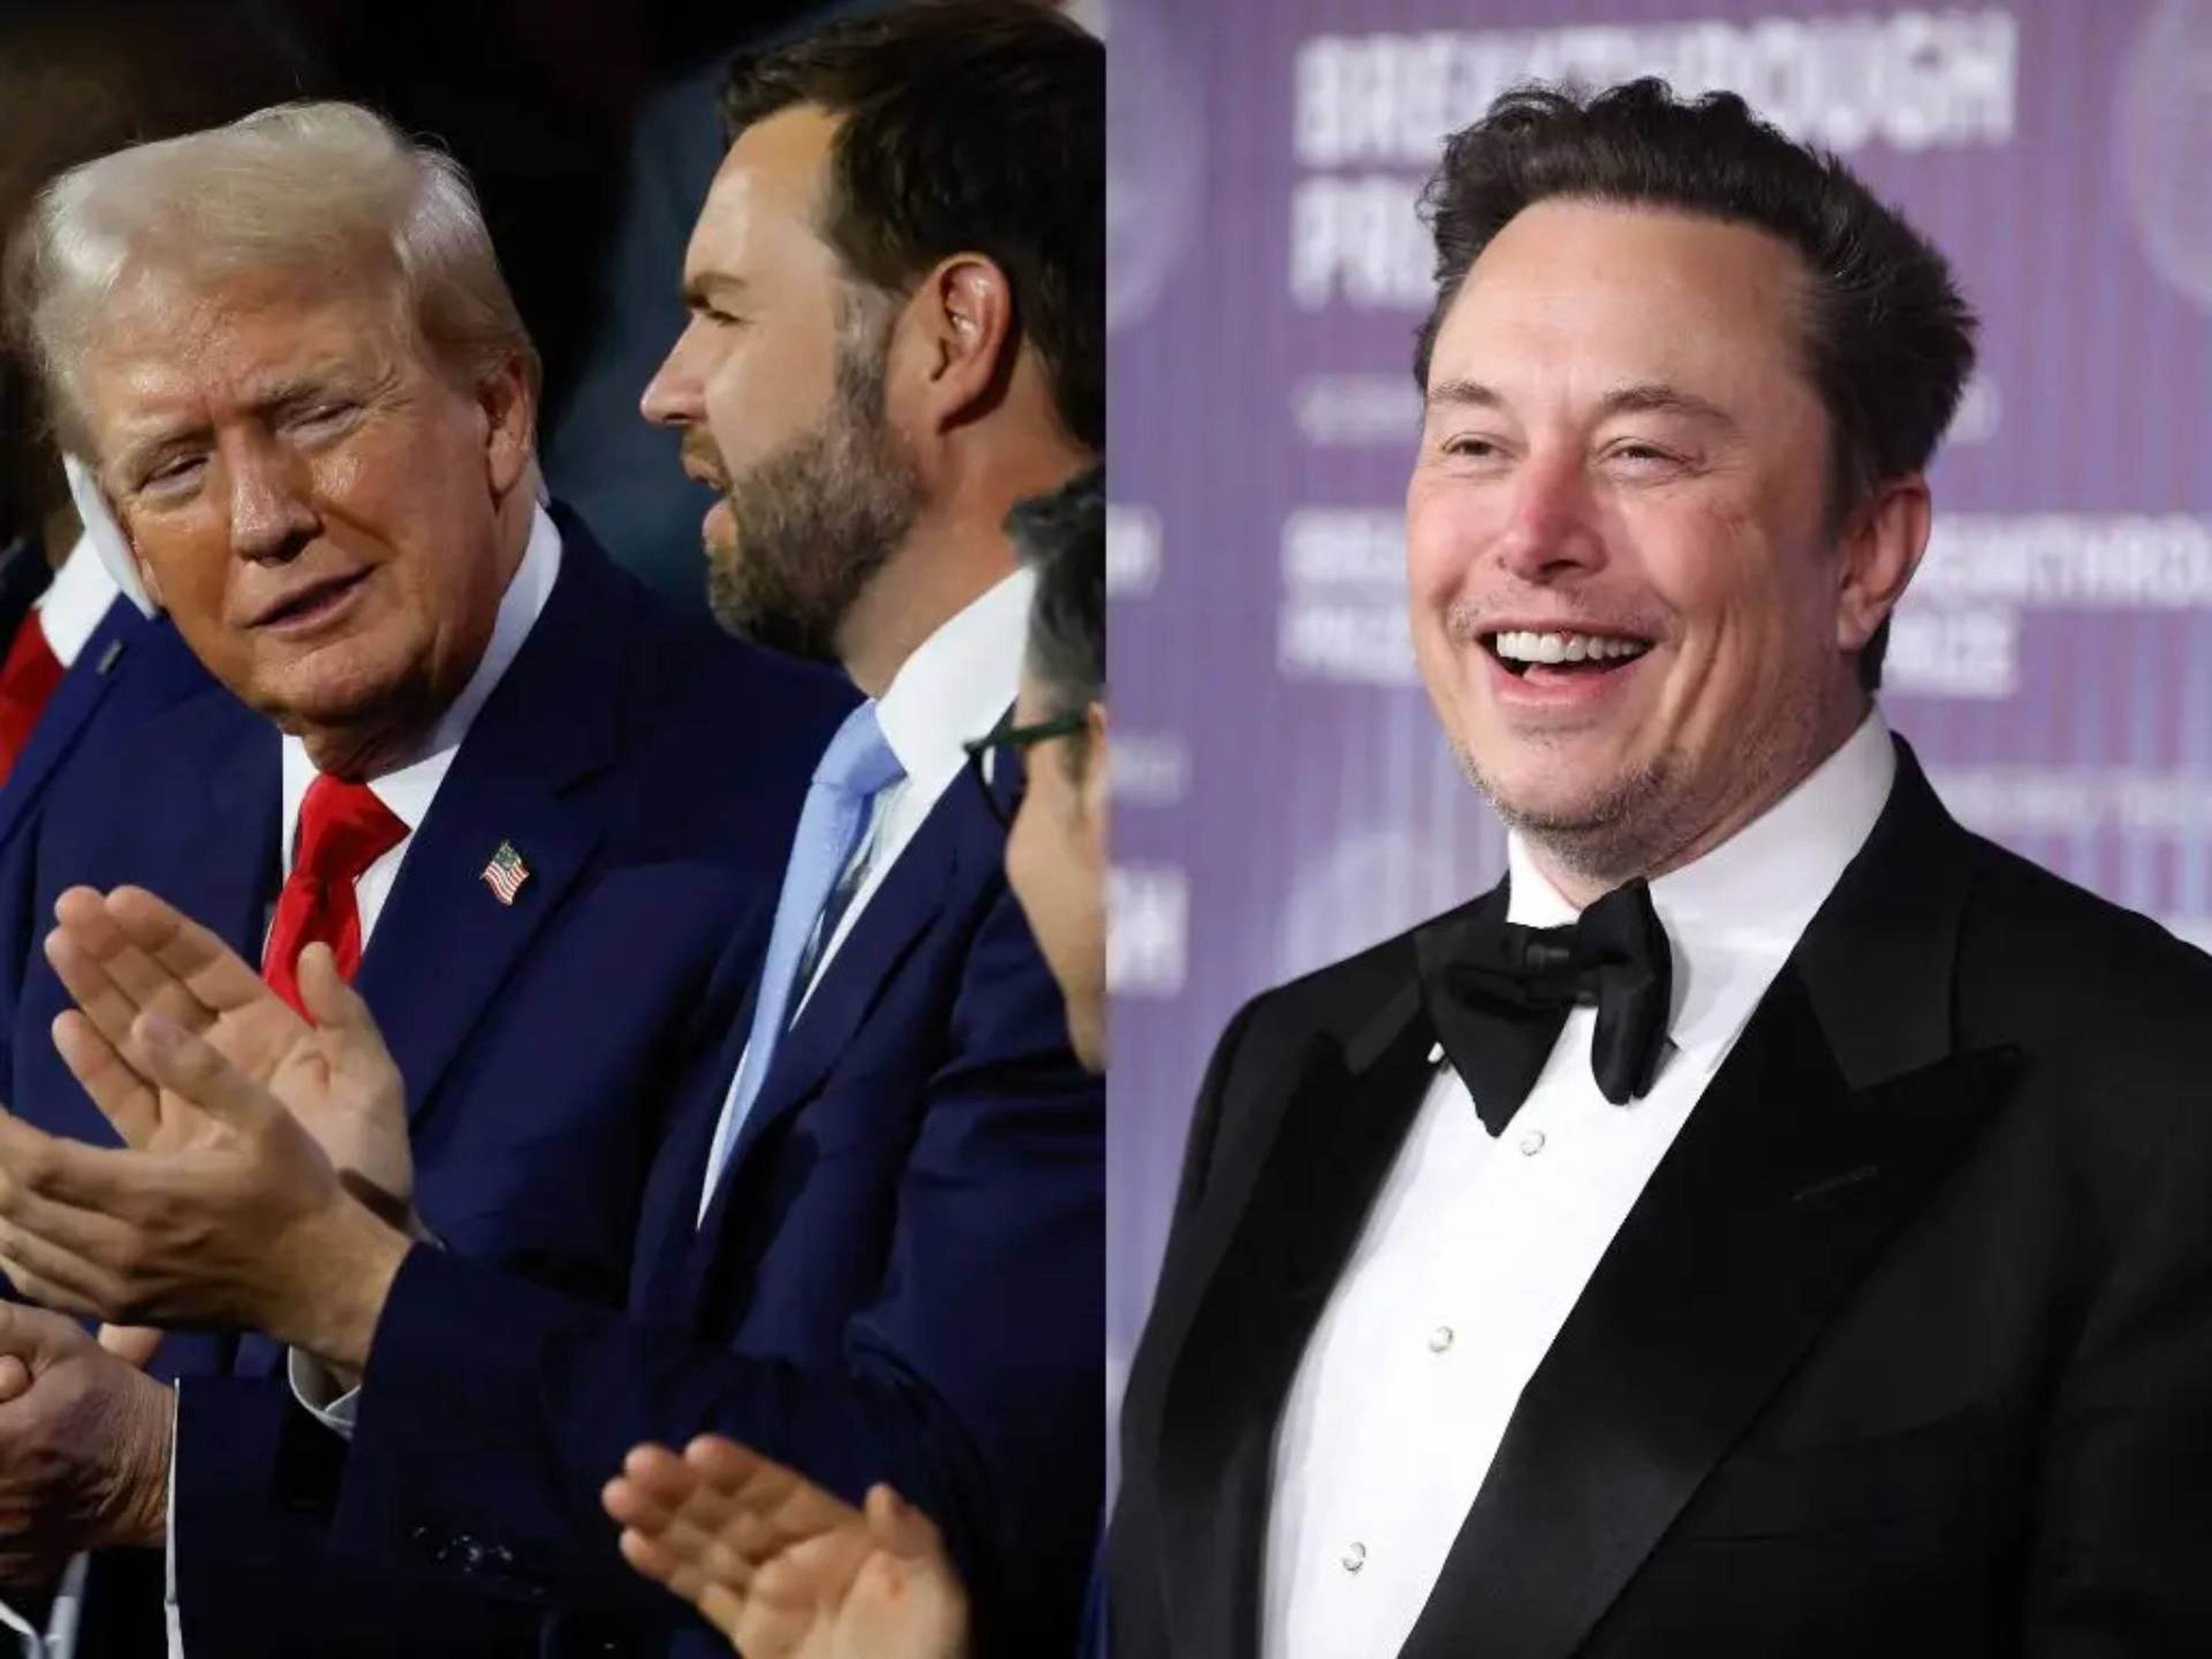 "Mis amigos más inteligentes, incluidos los que viven en el área de la bahía de San Francisco y han sido demócratas toda la vida, están entusiasmados con Trump/Vance", dijo el multimillonario Elon Musk en un post en X el domingo.